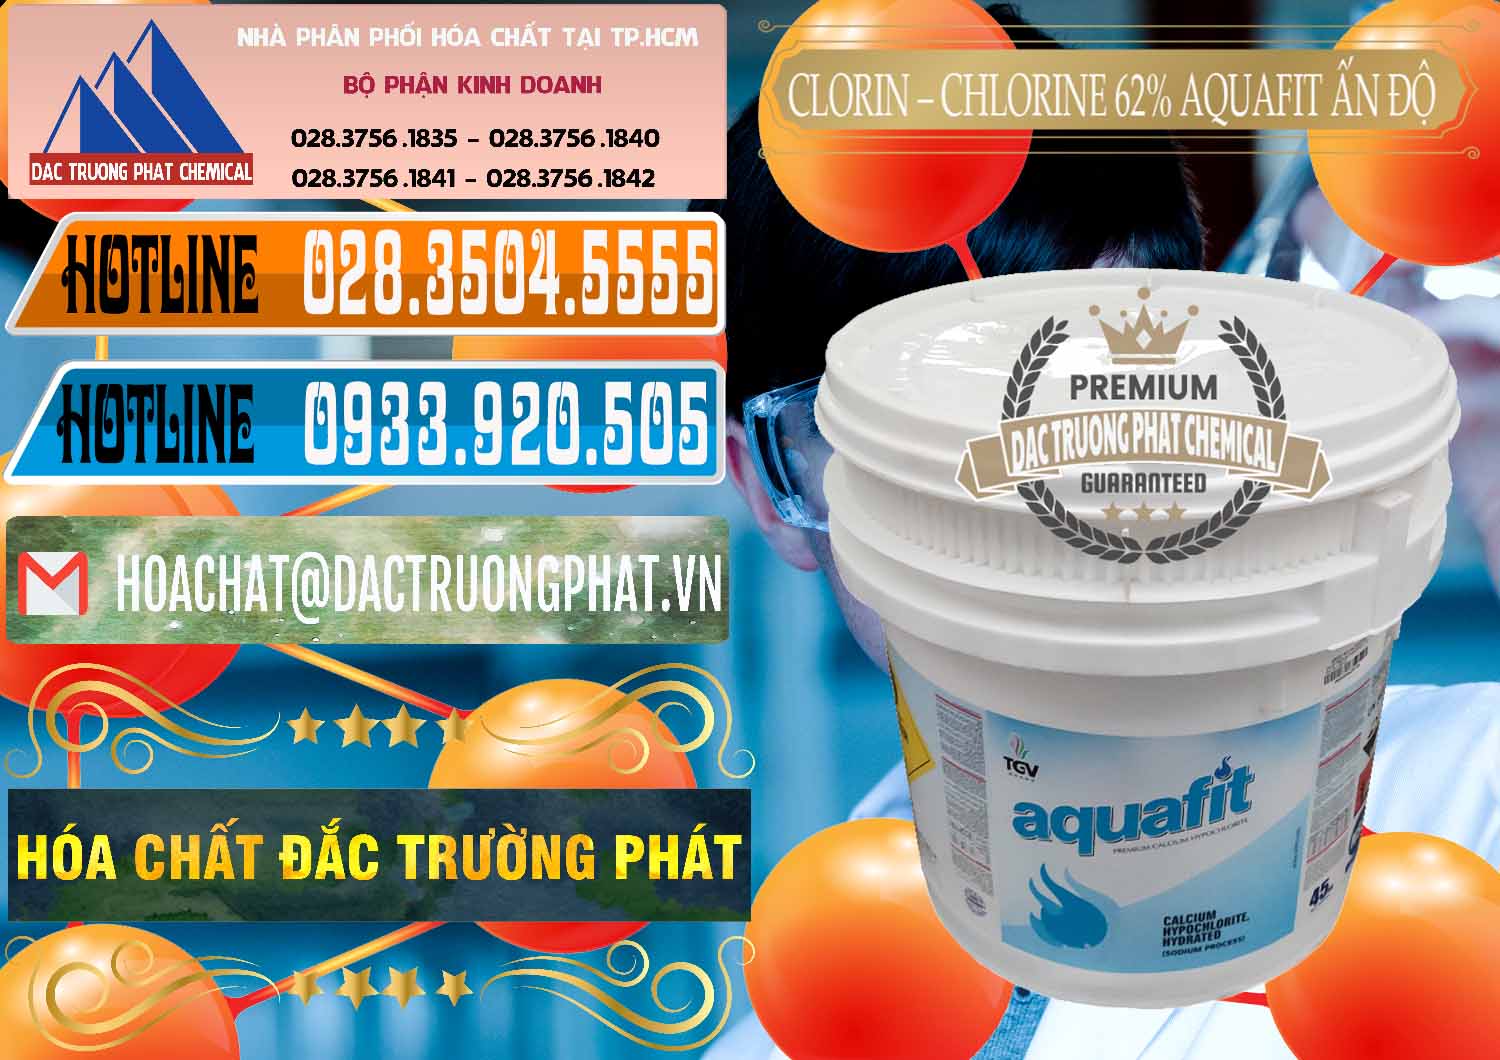 Đơn vị chuyên kinh doanh ( bán ) Clorin - Chlorine 62% Aquafit Thùng Lùn Ấn Độ India - 0057 - Công ty chuyên cung cấp - kinh doanh hóa chất tại TP.HCM - stmp.net